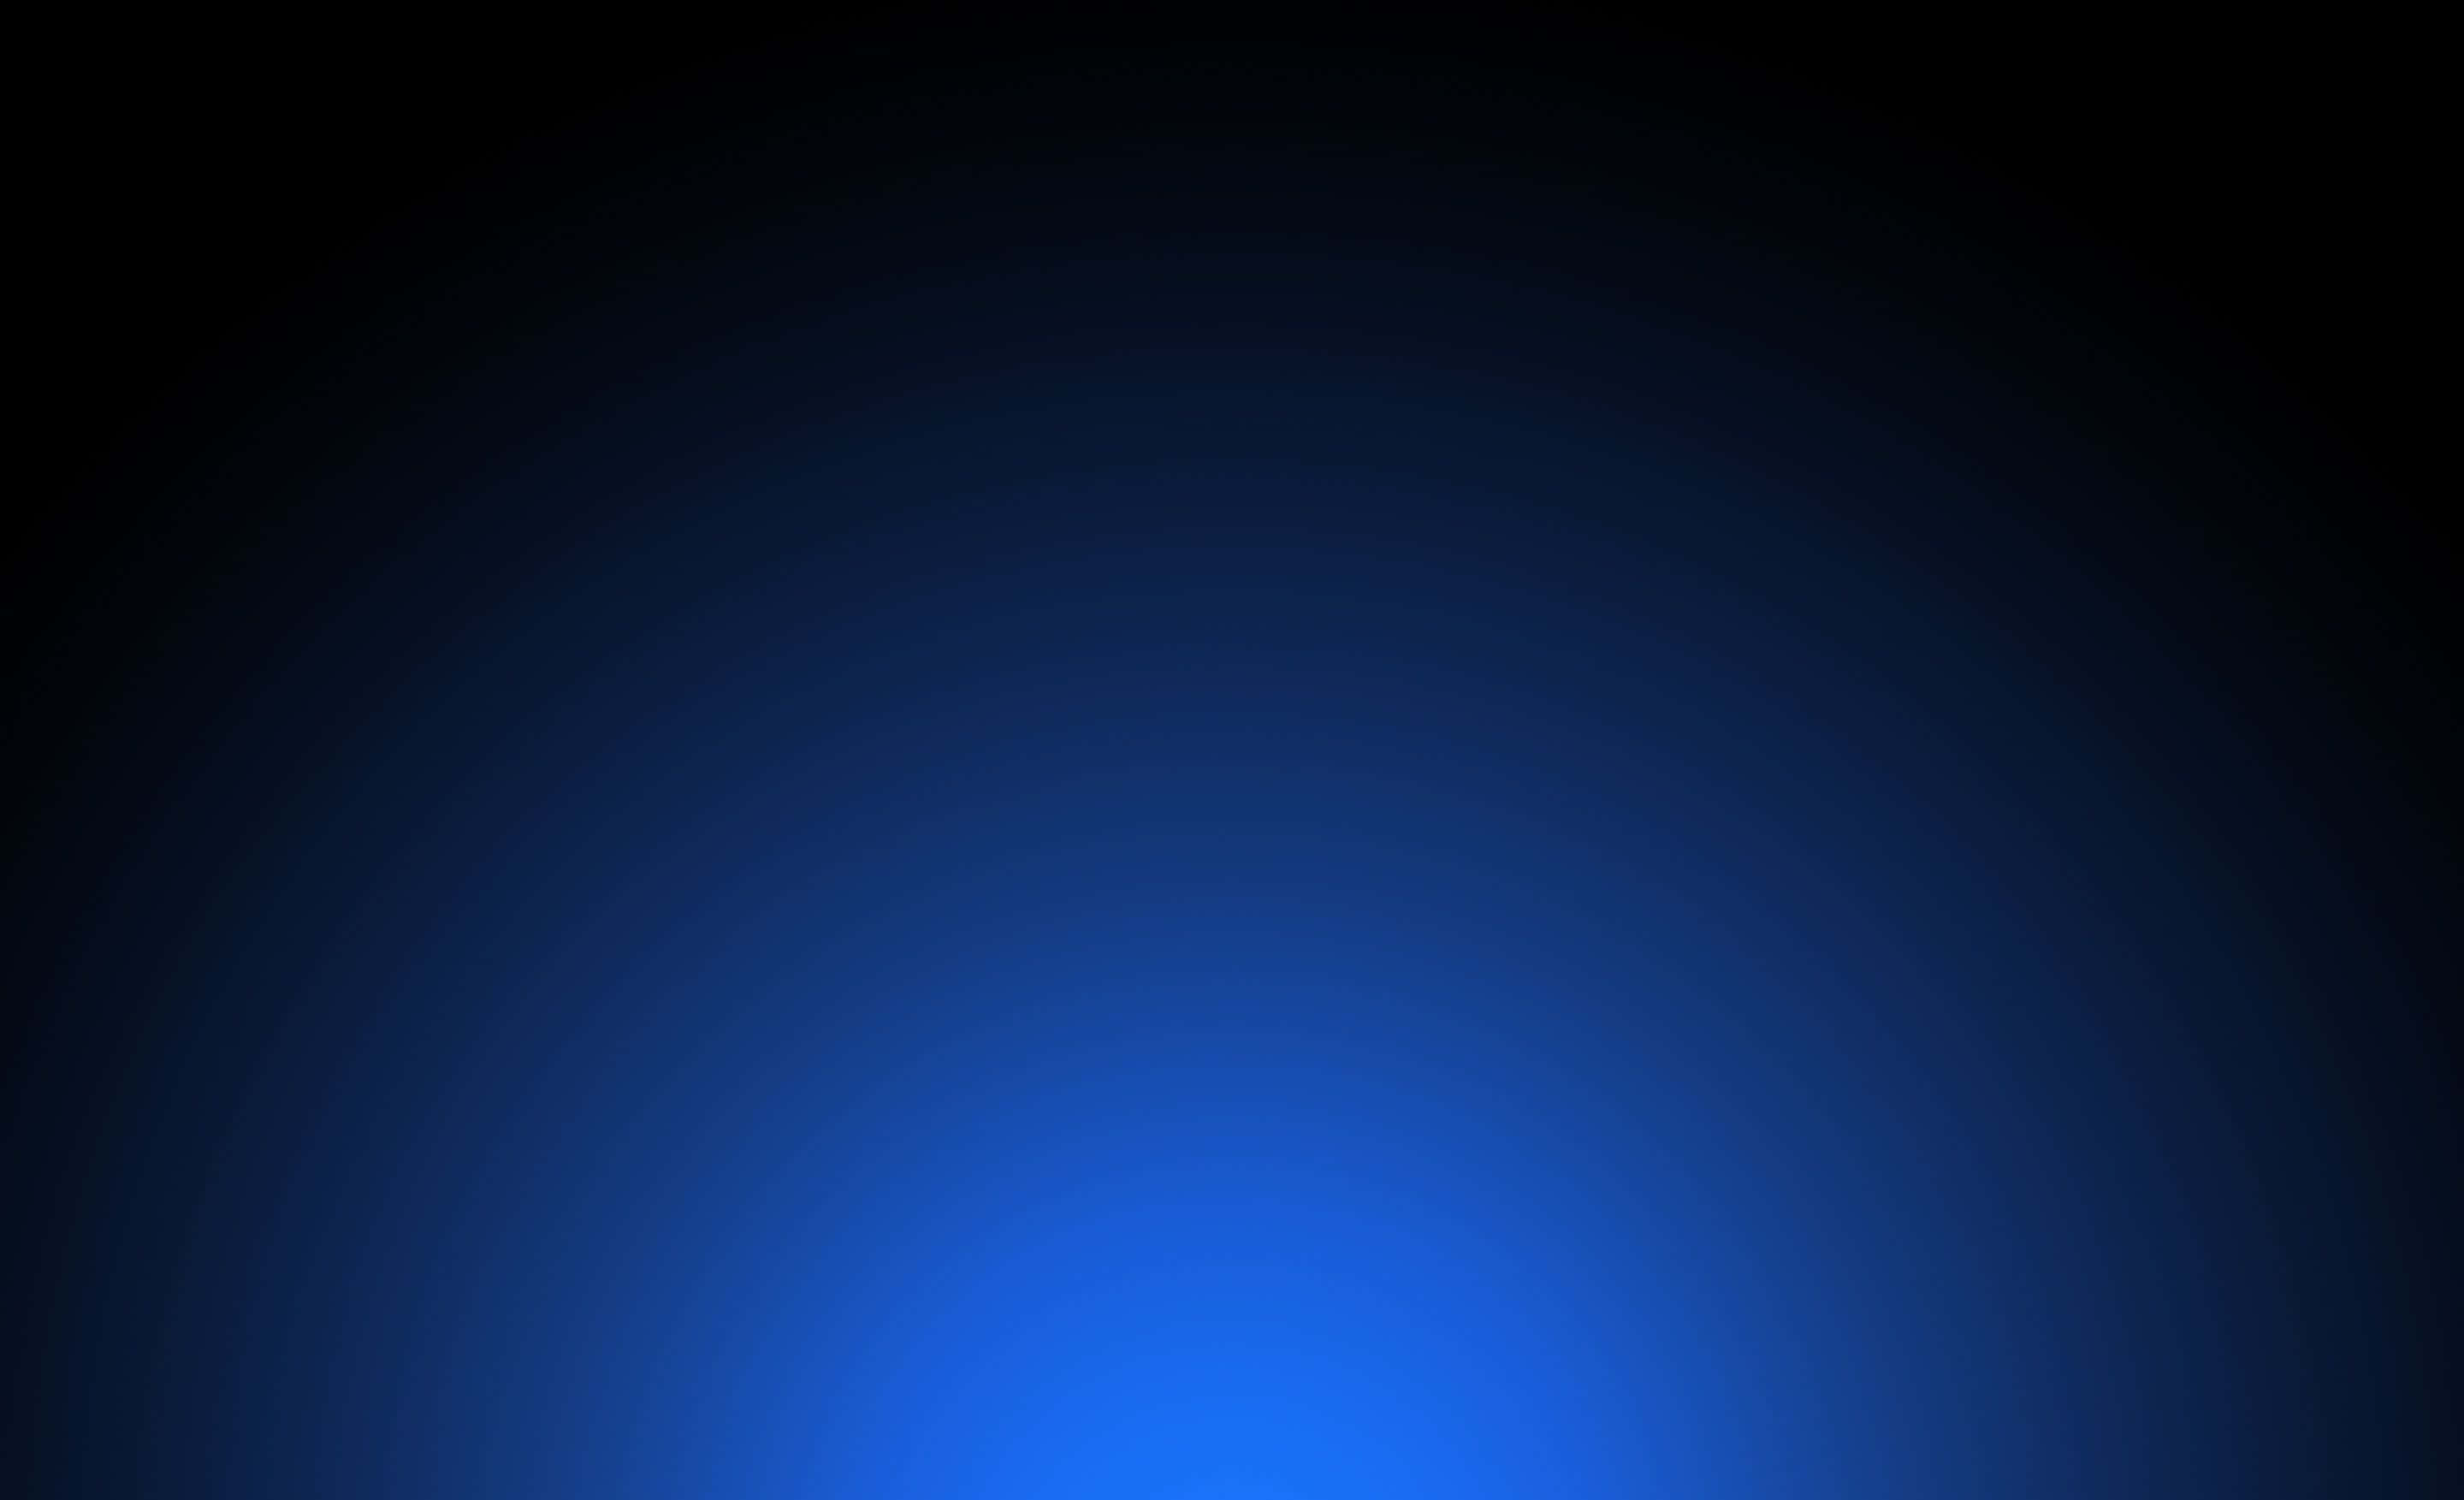 Blauverlaufender Hintergrund